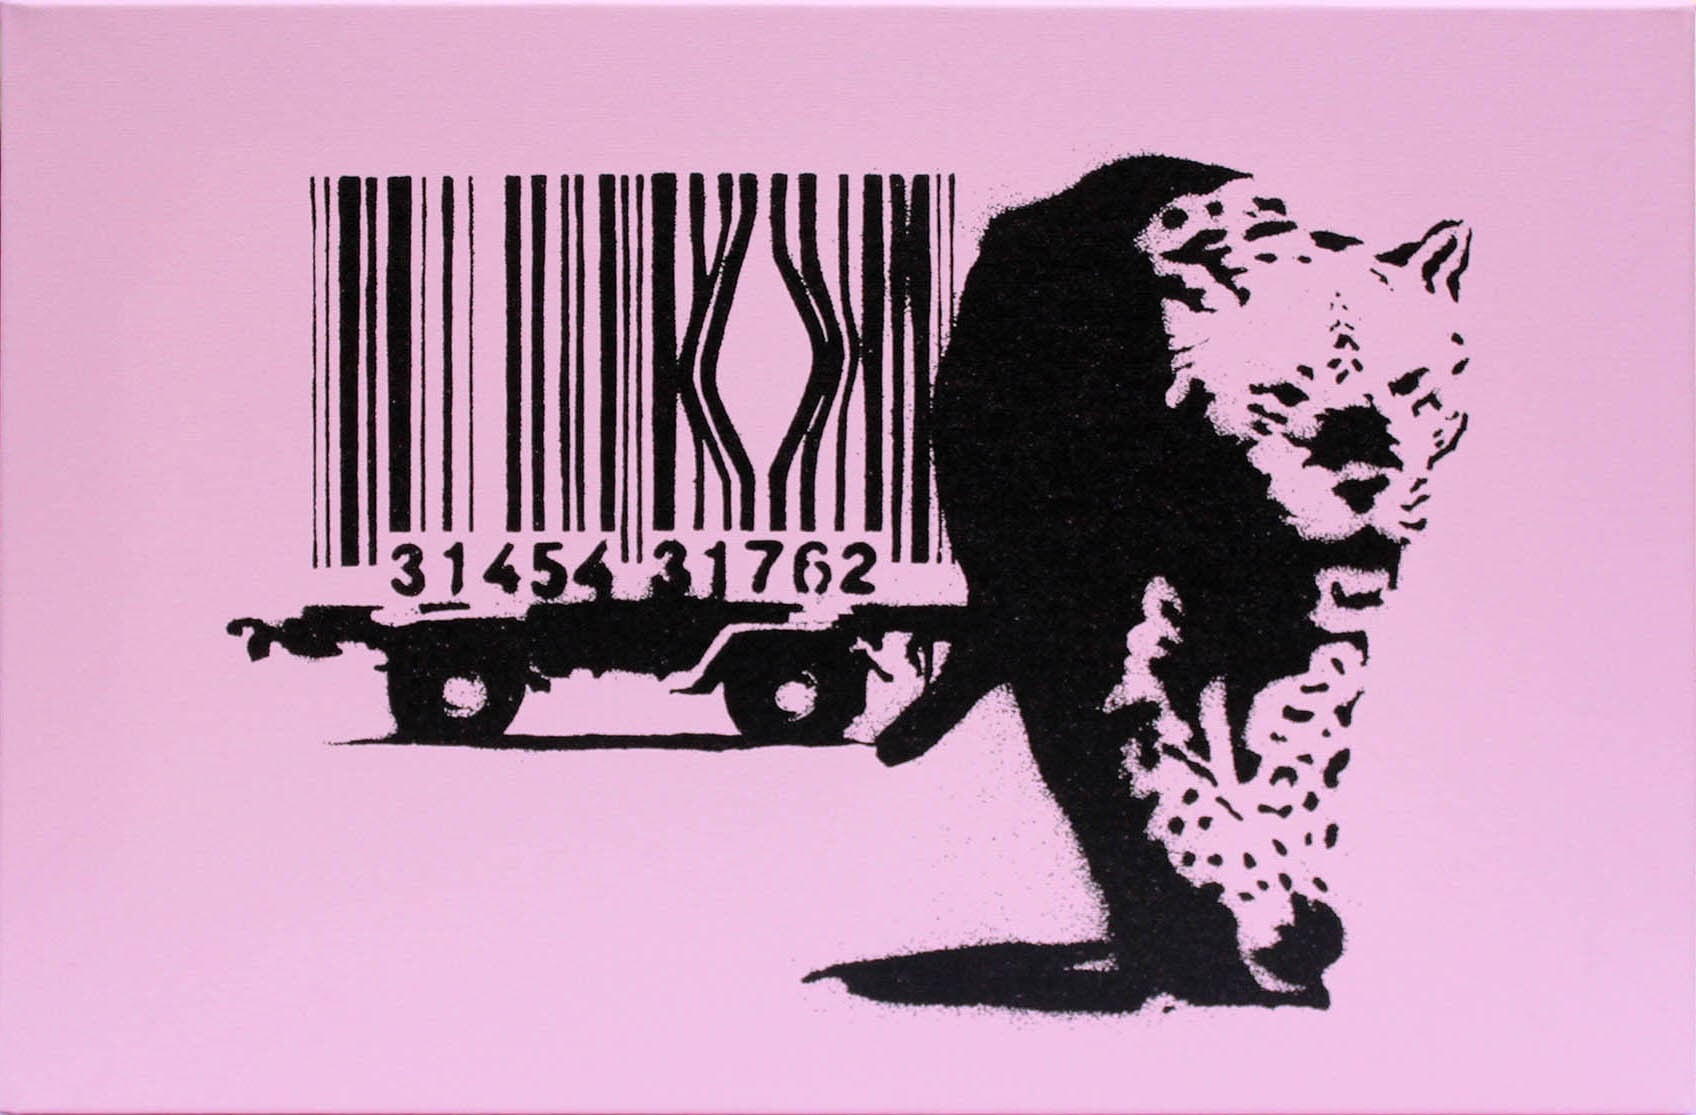 バンクシー作品「バーコード レパード/Barcode Leopard」展示用フック付きキャンバスジークレ Banksy